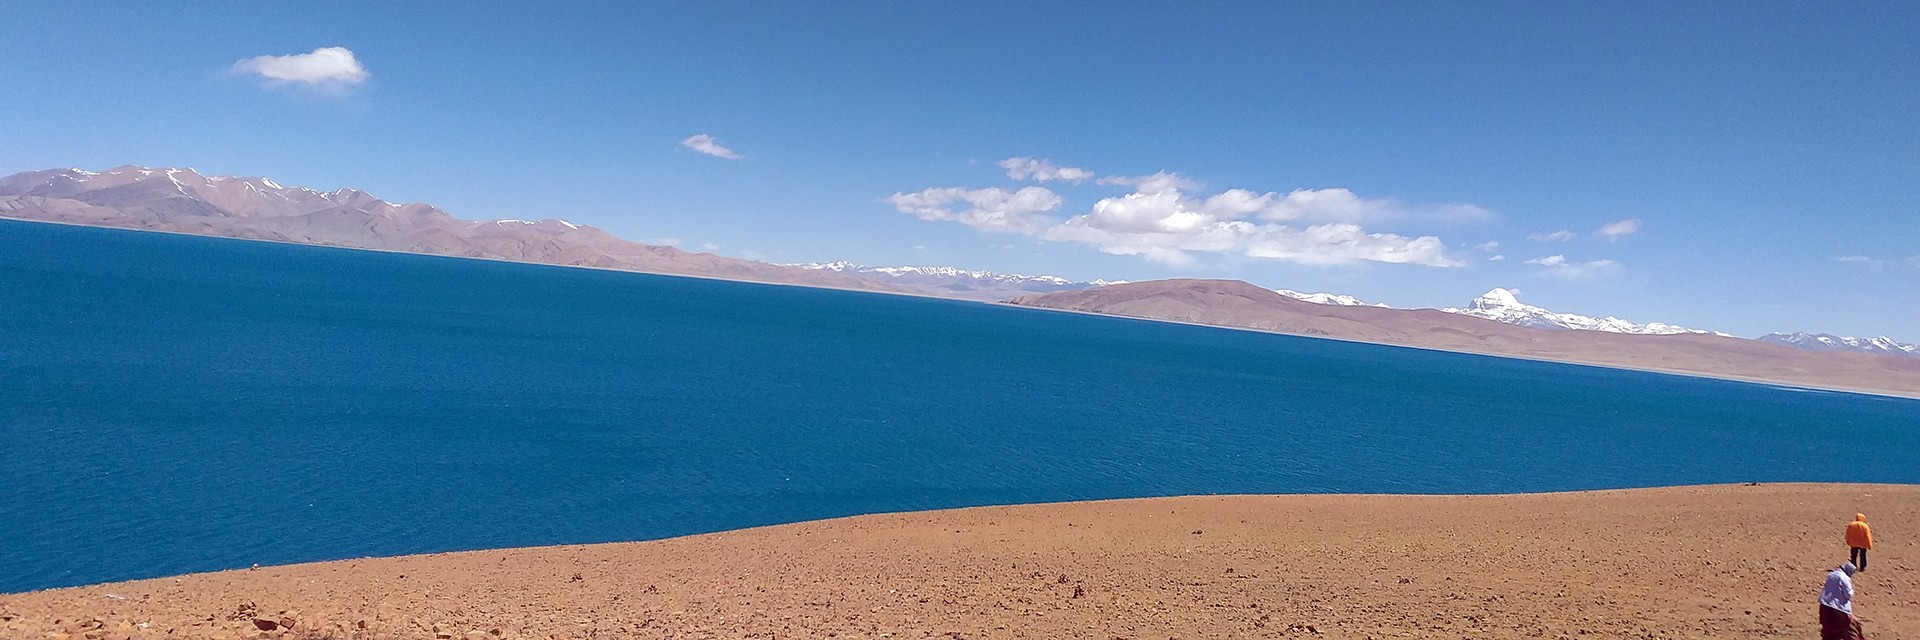 Kailash Mansarovar Lake